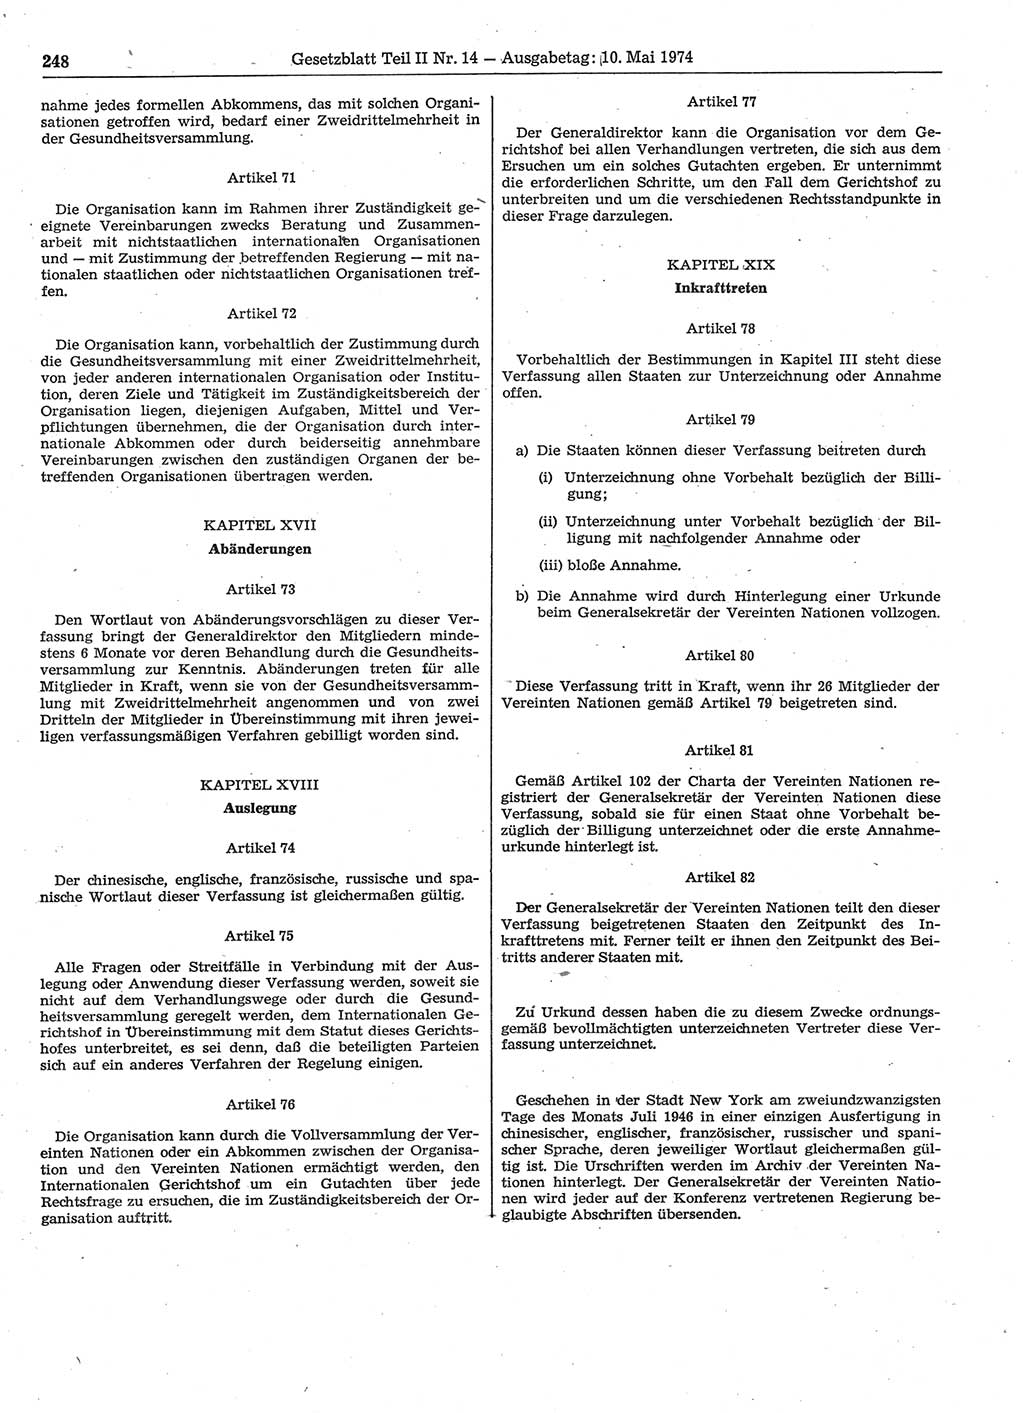 Gesetzblatt (GBl.) der Deutschen Demokratischen Republik (DDR) Teil ⅠⅠ 1974, Seite 248 (GBl. DDR ⅠⅠ 1974, S. 248)